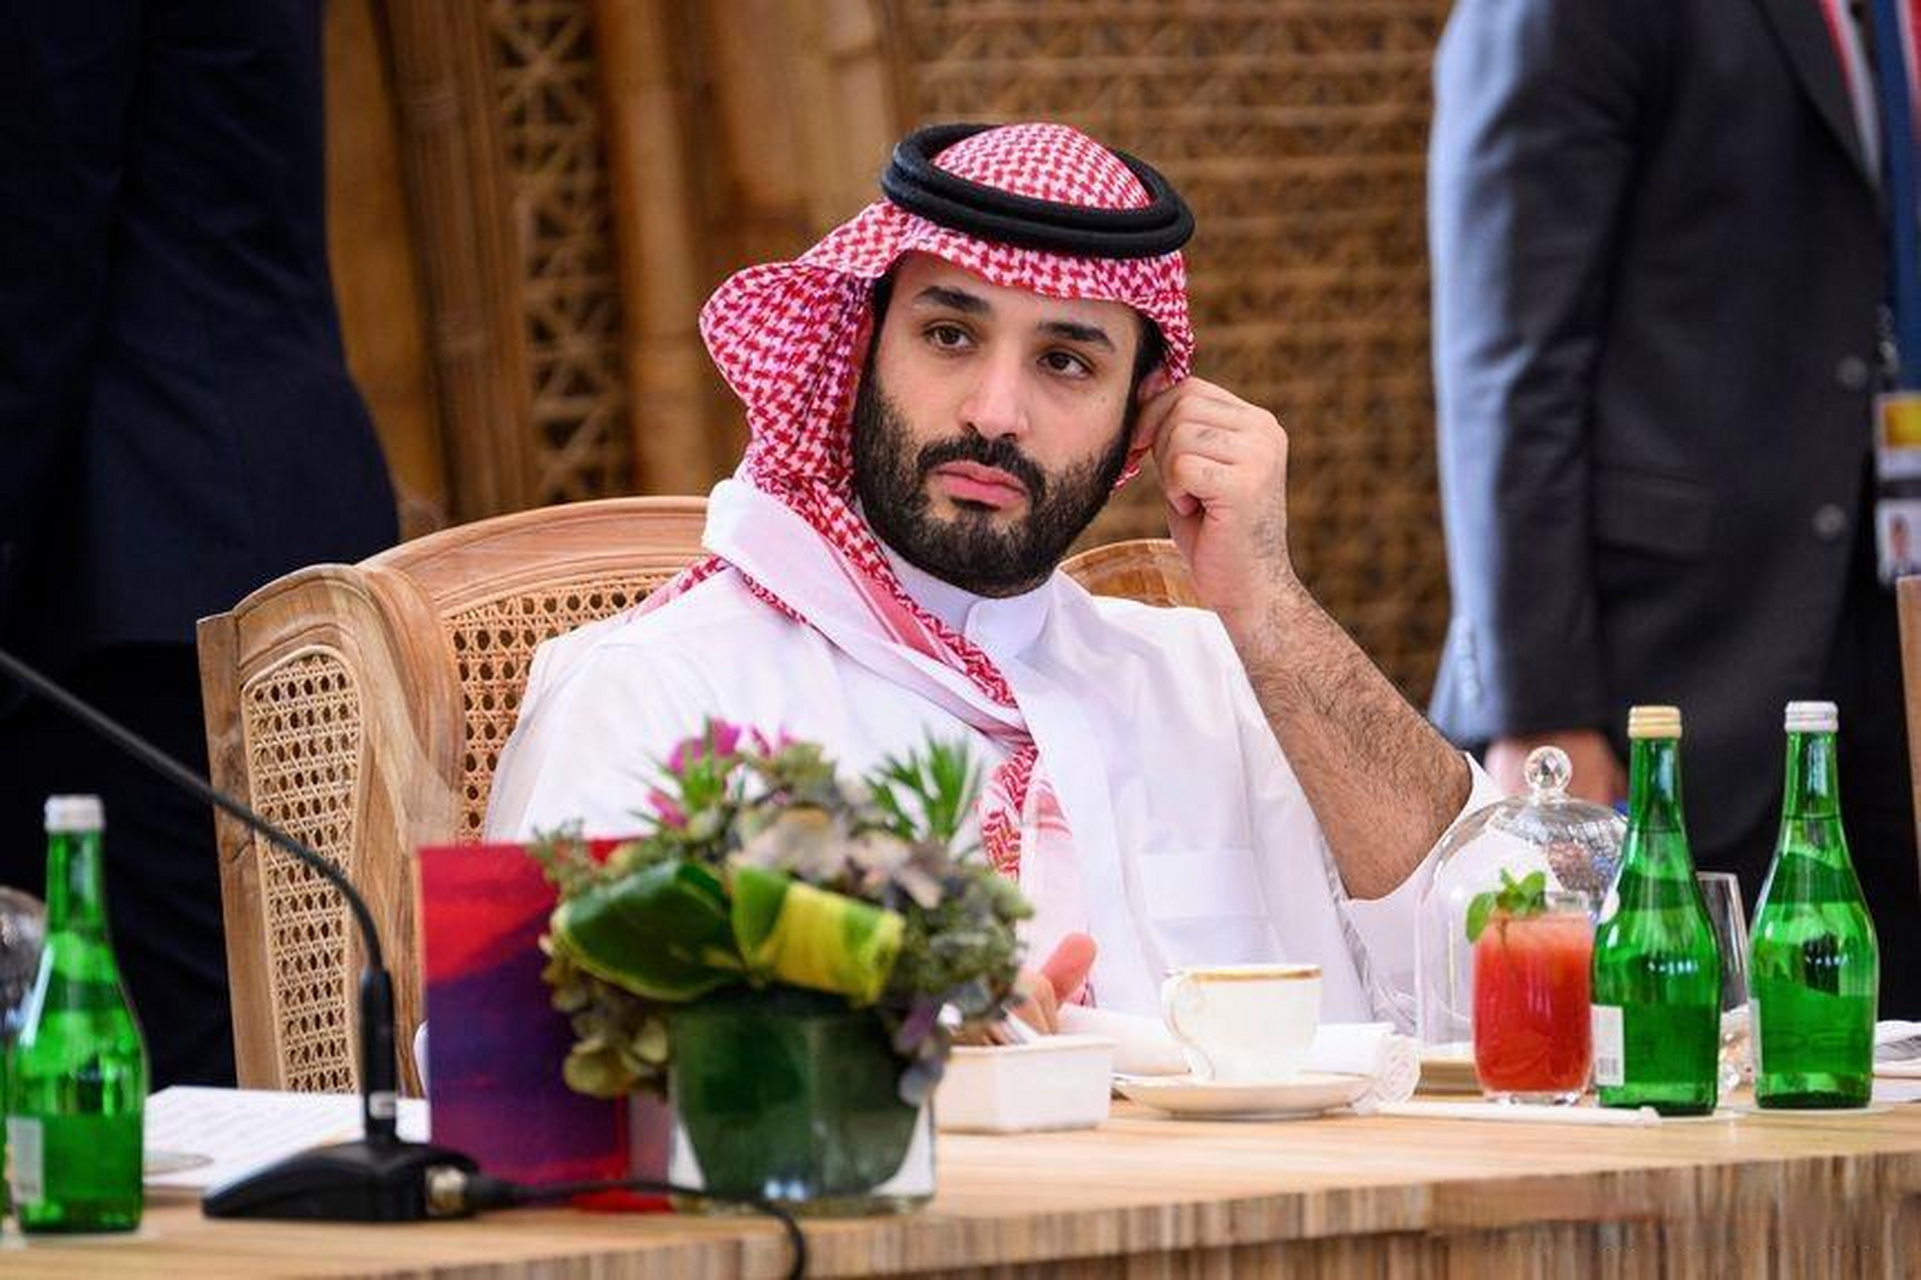 沙特王储萨勒曼图片图片